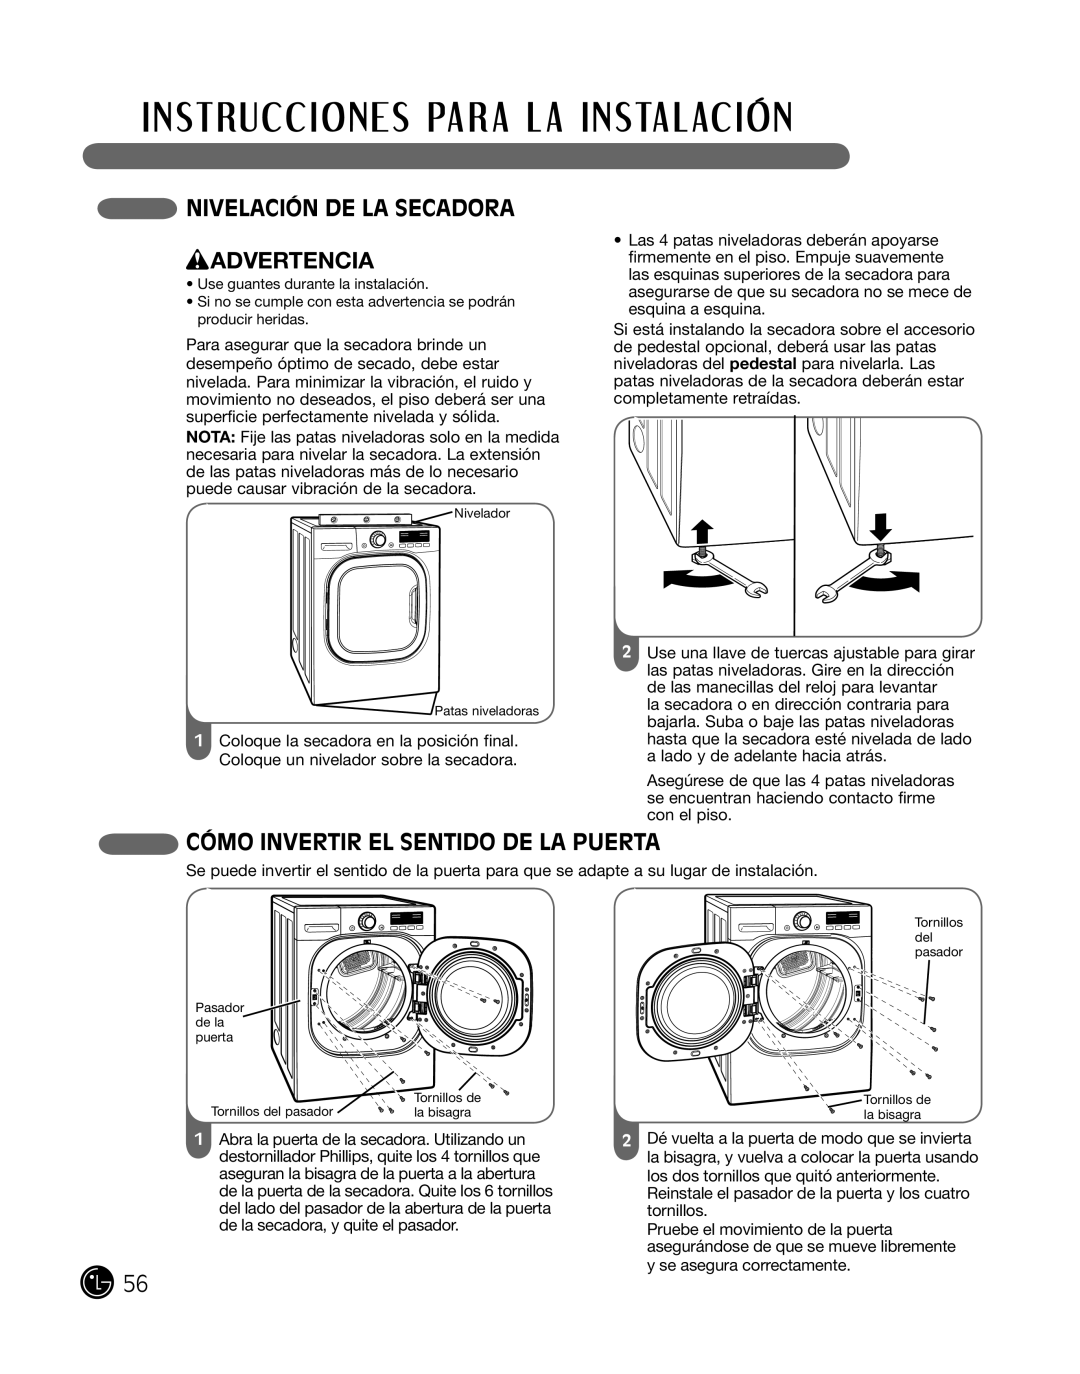 LG Electronics P154 manual nivelaciÓn de la Secadora wADVERTENCIA, cÓmo inverTir el SenTido de la PuerTa 